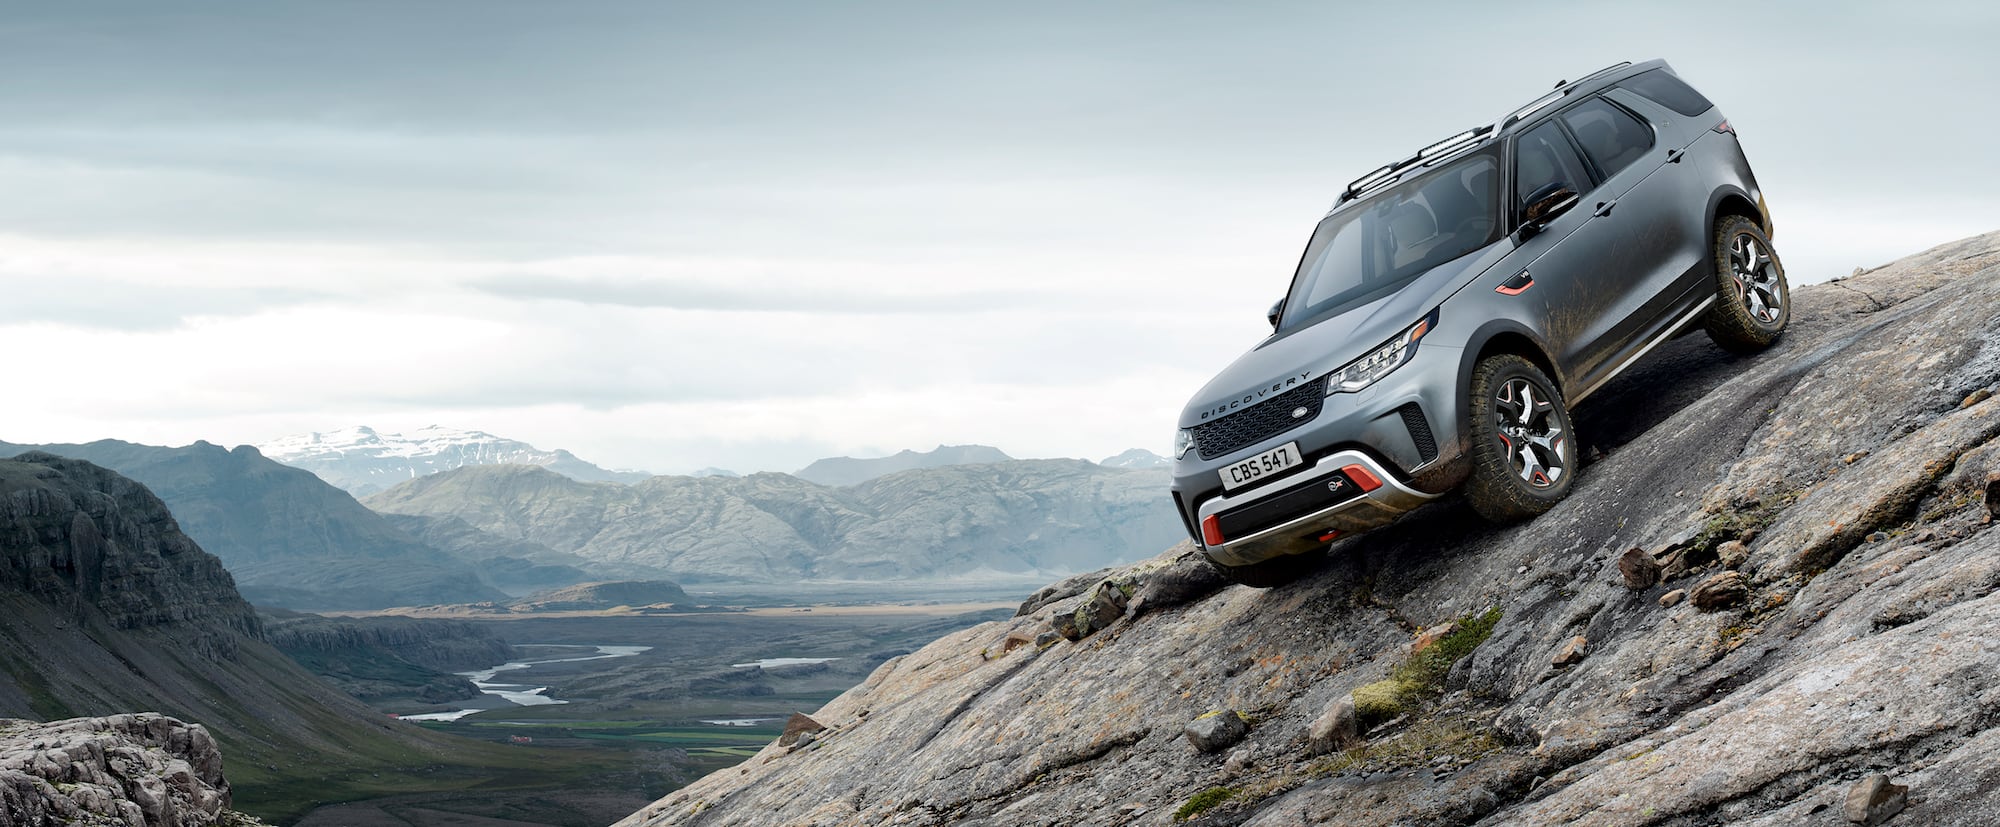 Mehr als nur ein SUV: Der neue Land Rover Discovery SVX 12